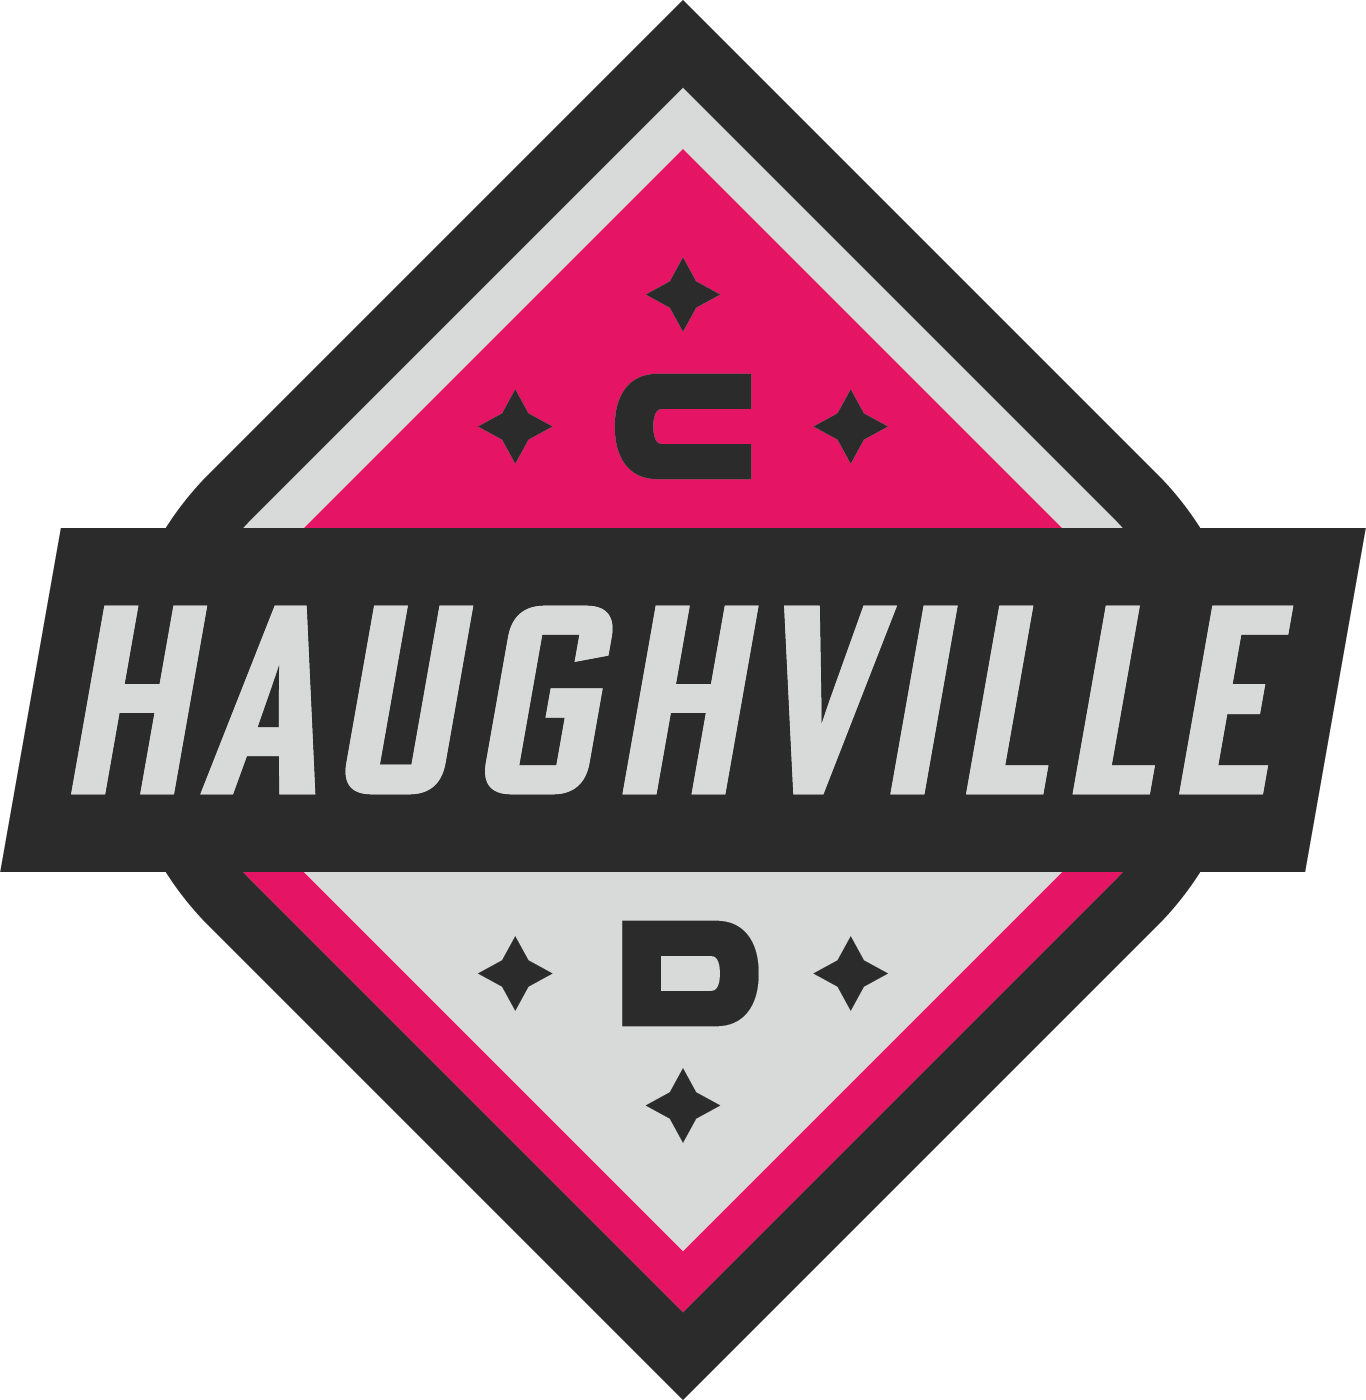 Haughville CD Team Sponsorships